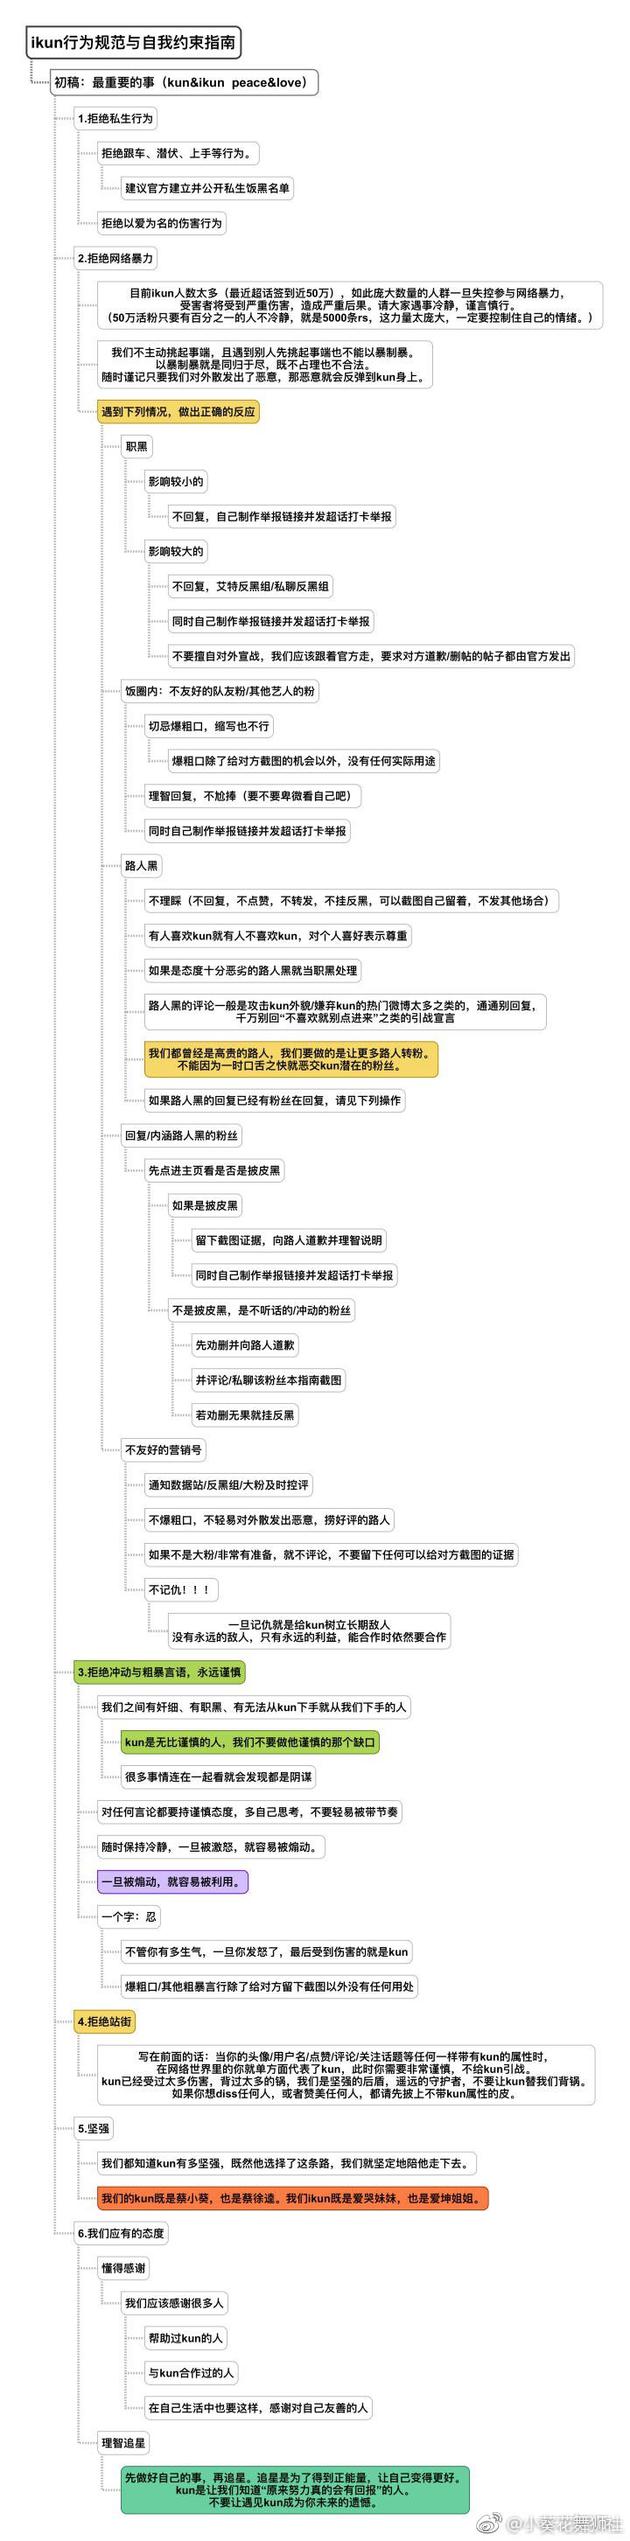 蔡徐坤粉丝出饭圈规范指南 大站还发了道歉声明…